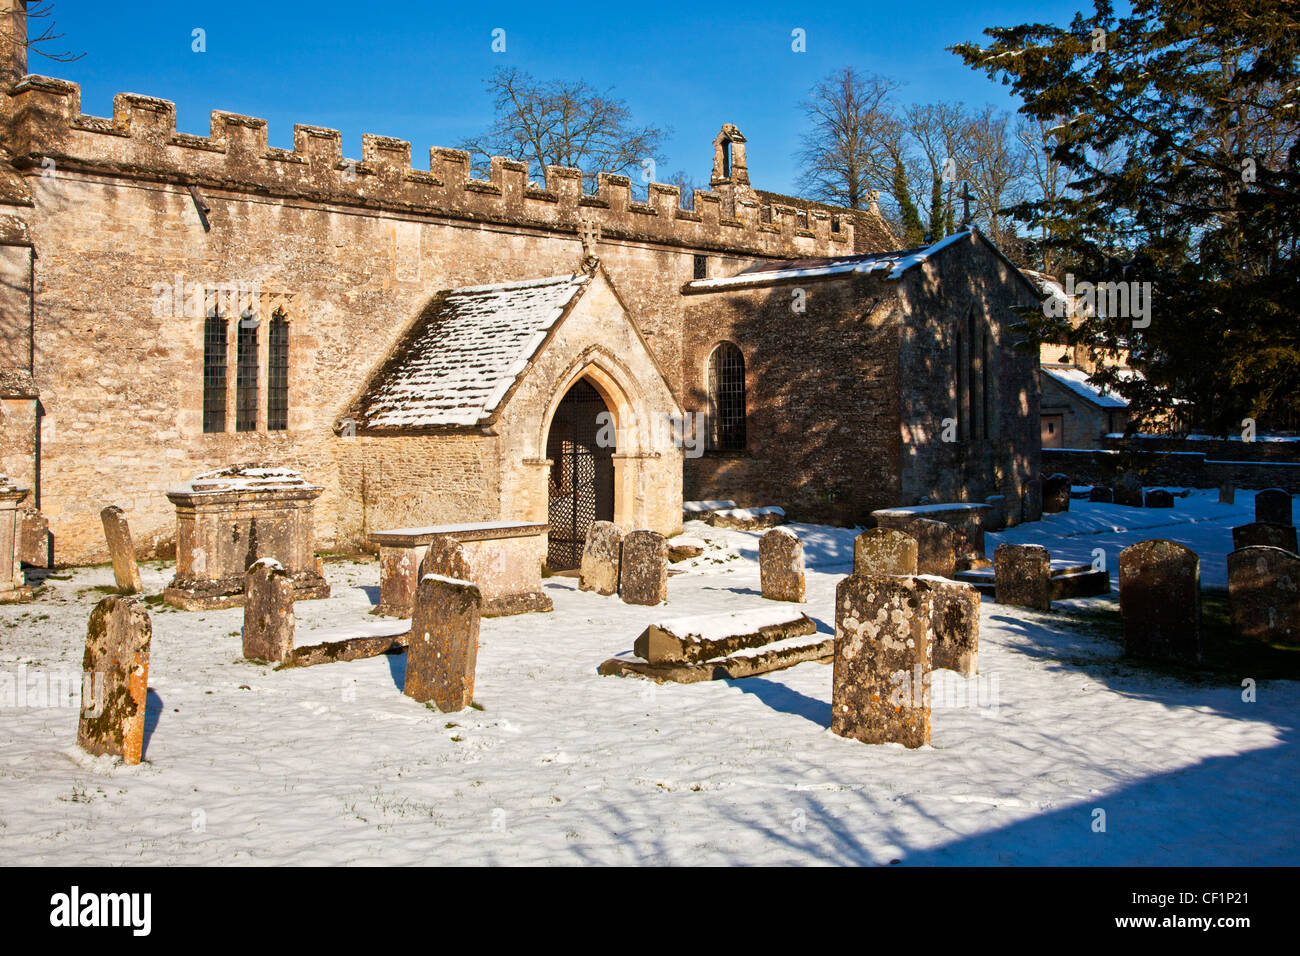 Hiver neige vue de l'église de la Sainte Croix dans l'ou Rood village de Cotswold Ampney Crucis, Gloucestershire, England, UK Banque D'Images